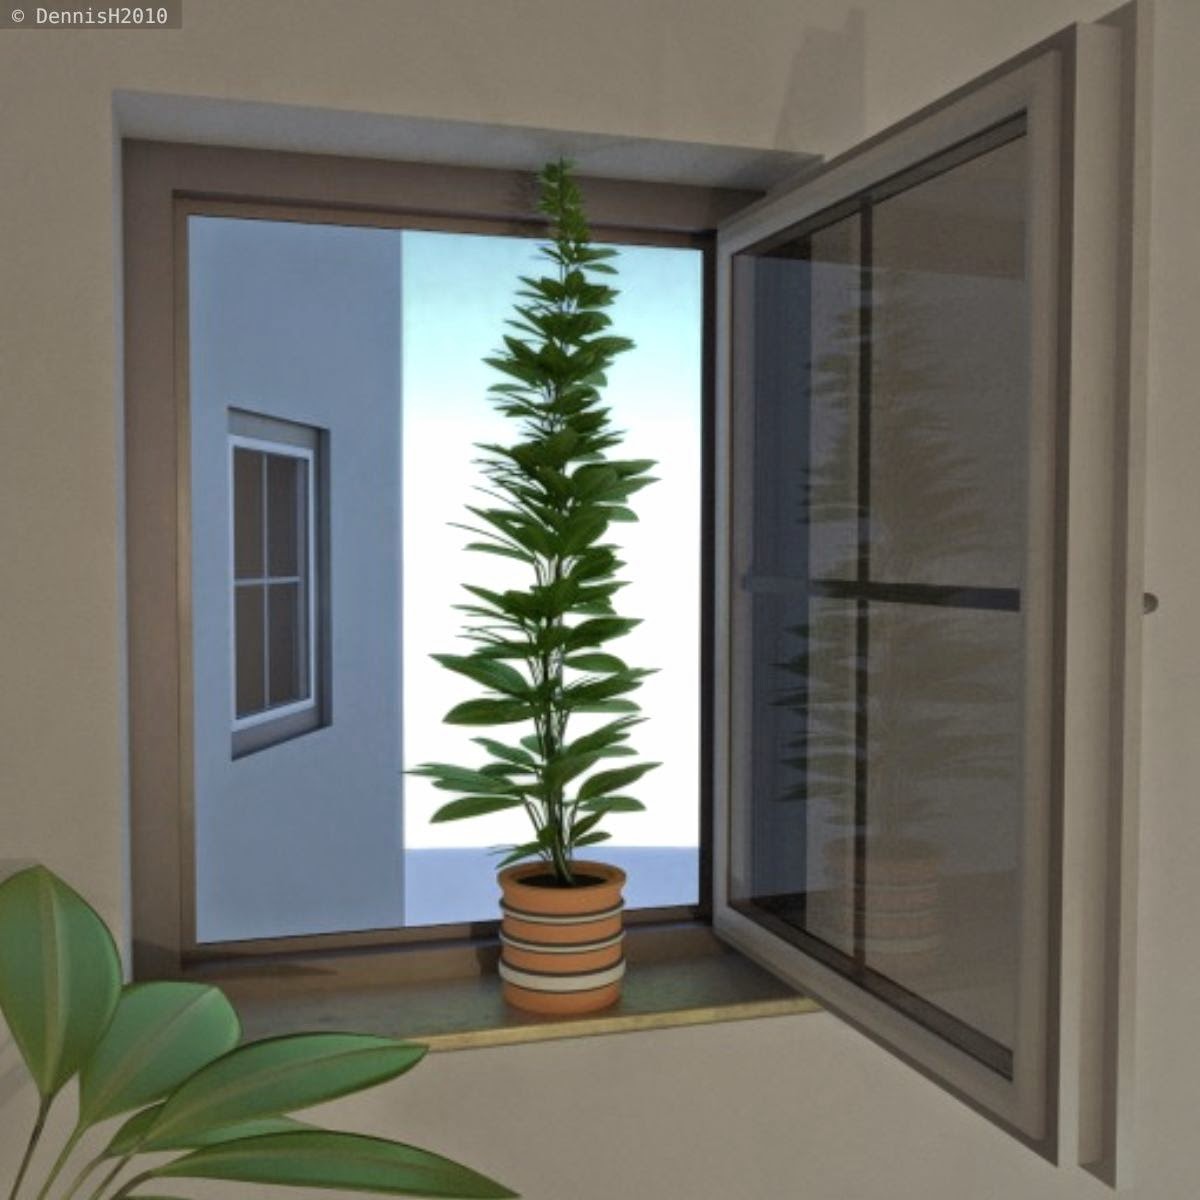 Window Plant by DennisH2010